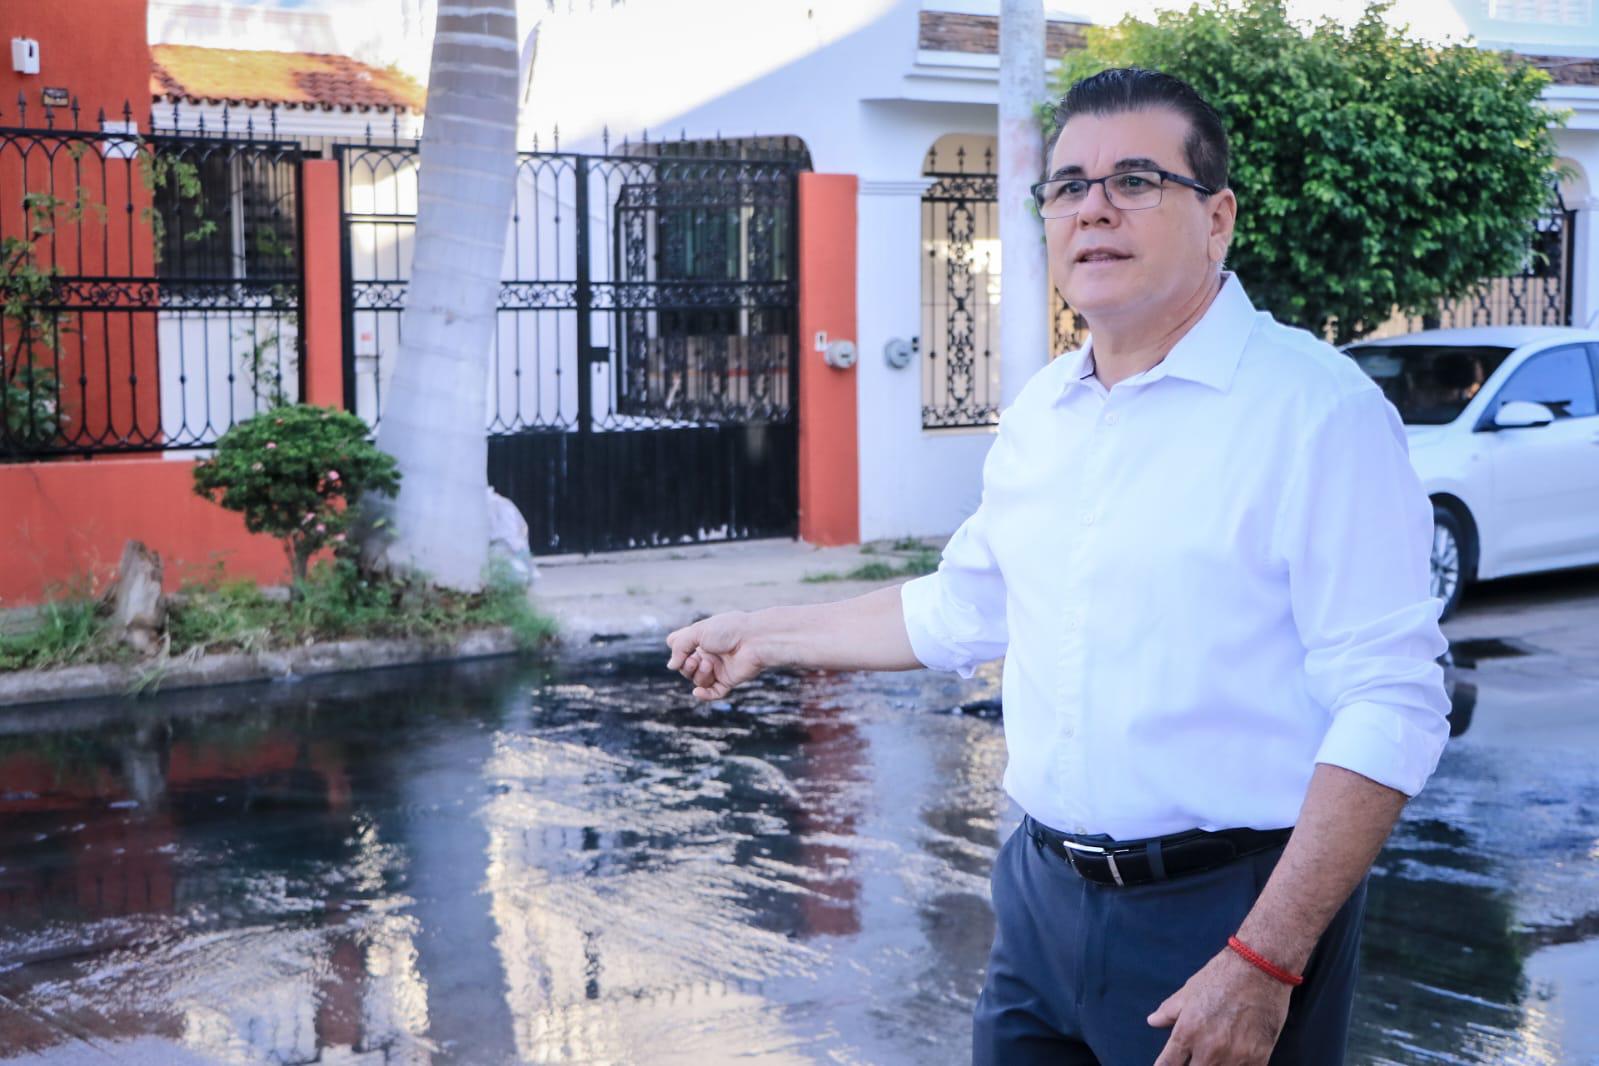 $!Tras atender Noroeste a vecinos de Villas del Estero, Alcalde acude y promete acabar con fuga de drenaje